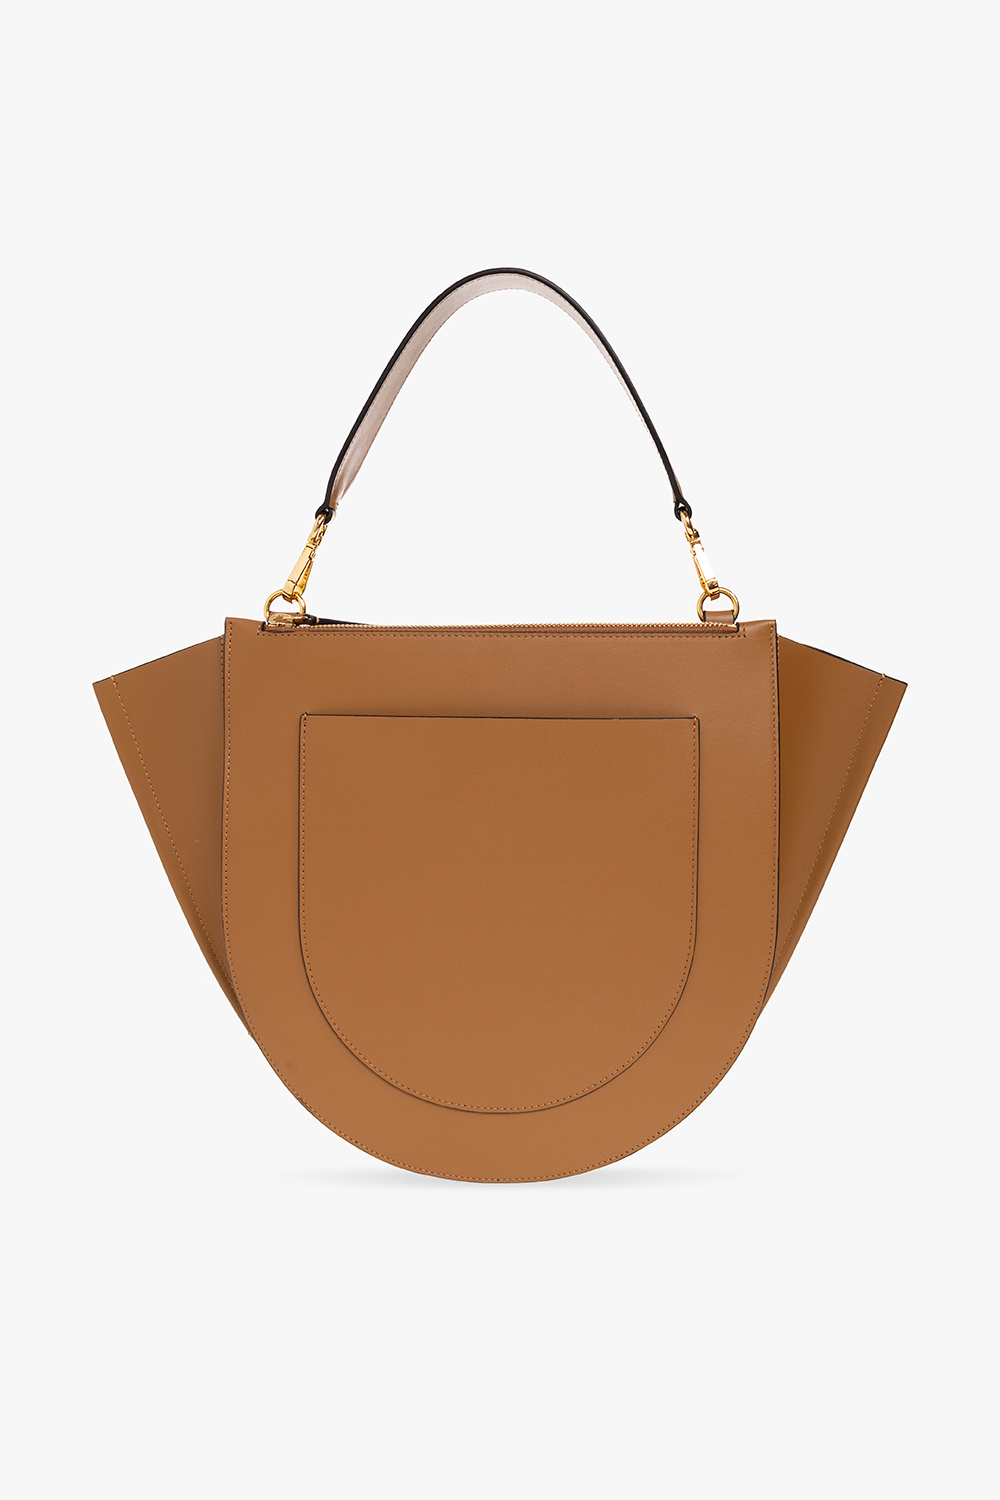 Wandler ‘Hortensia Big’ shoulder bag